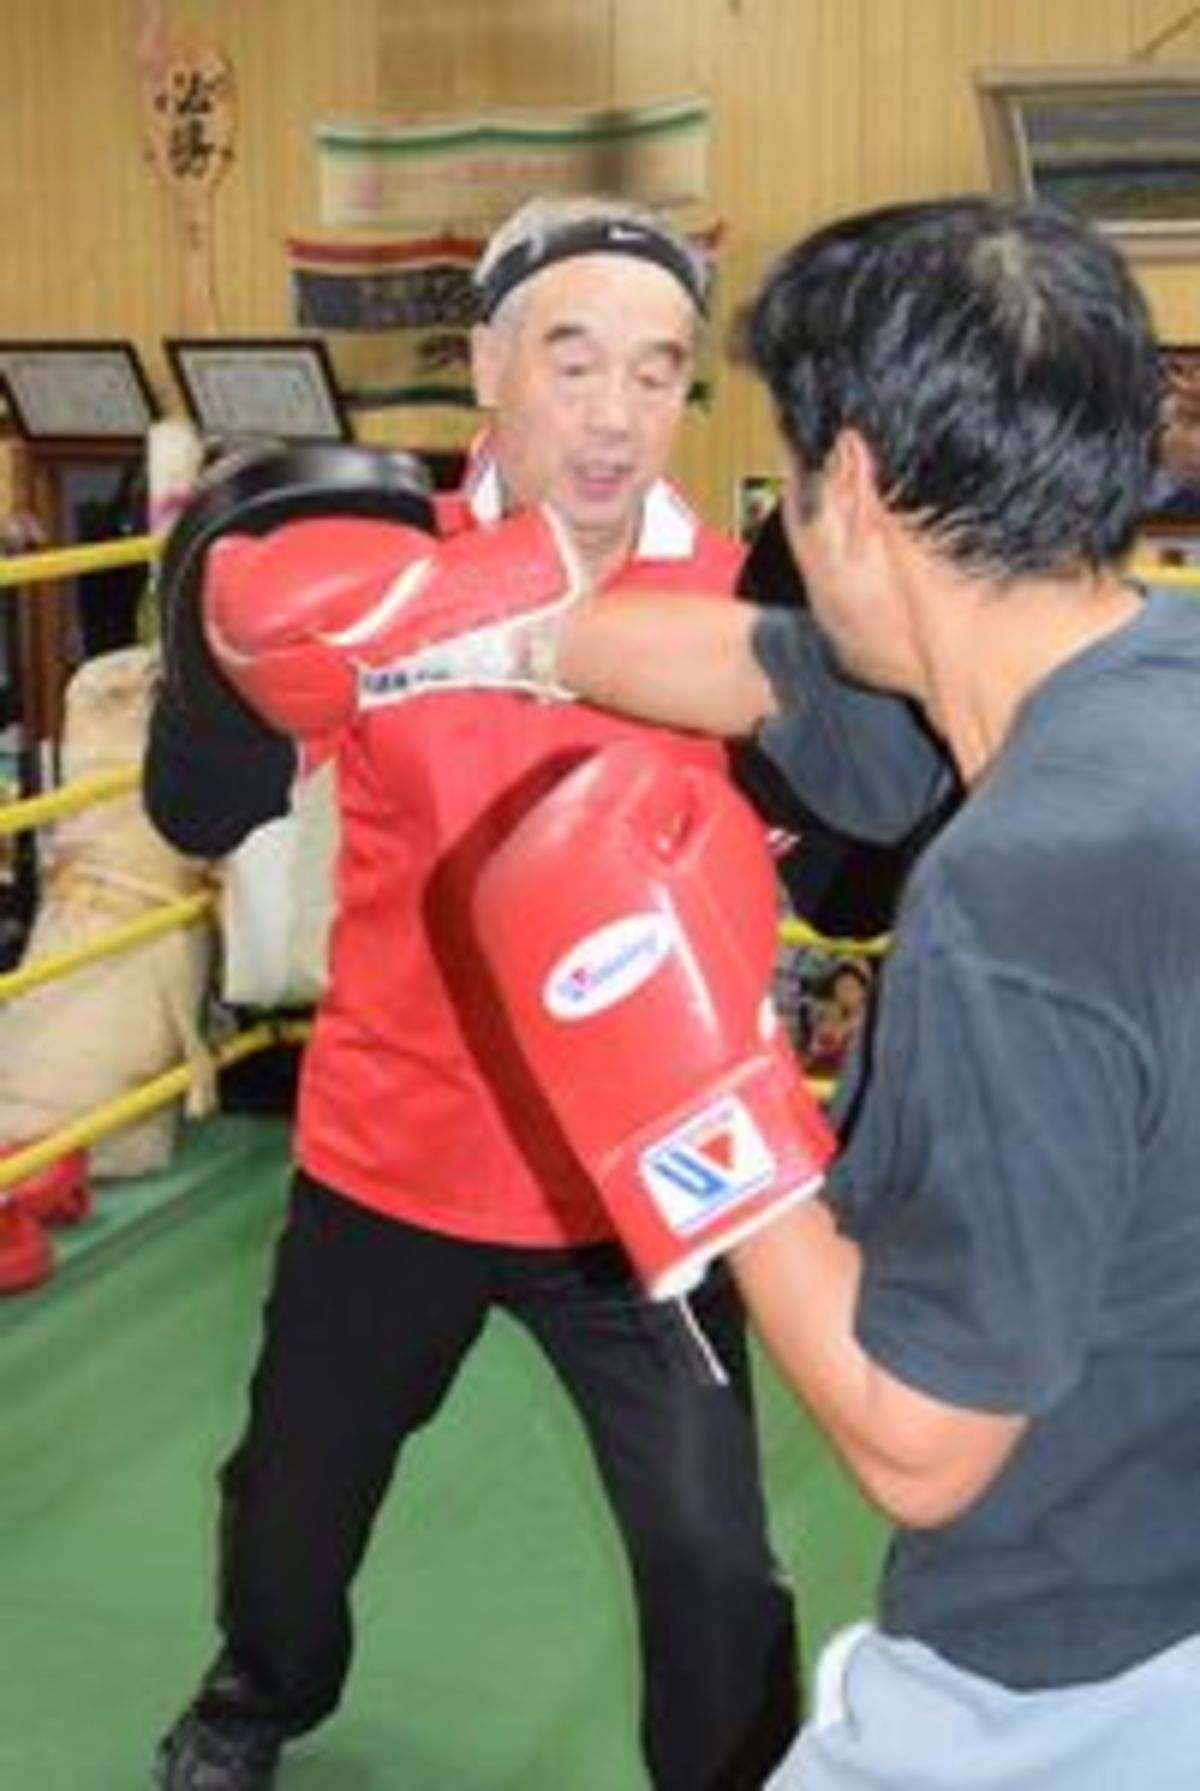 プロボクサー育てる川田武司さん 必ずチャンピオン出す 徳島ニュース 徳島新聞電子版